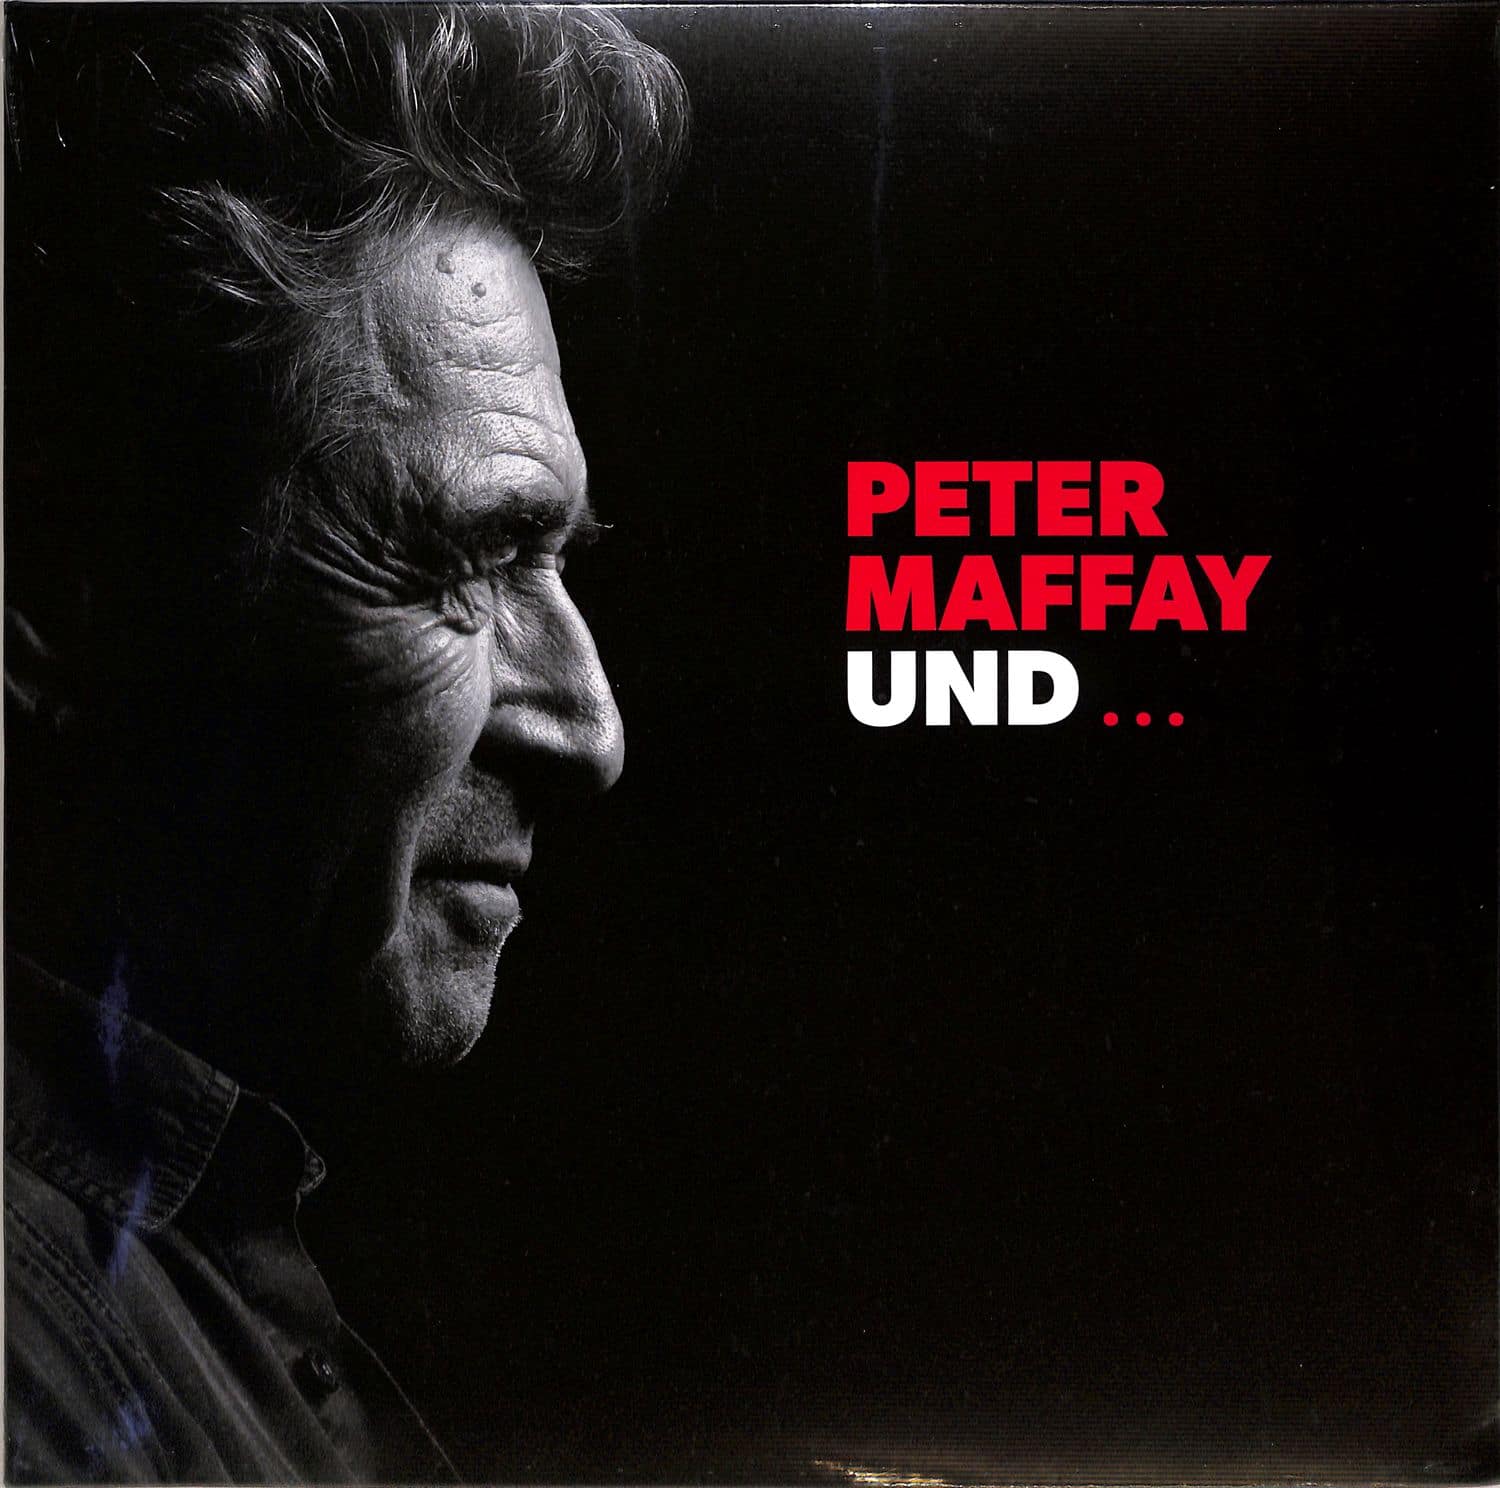 Peter Maffay - PETER MAFFAY UND... 